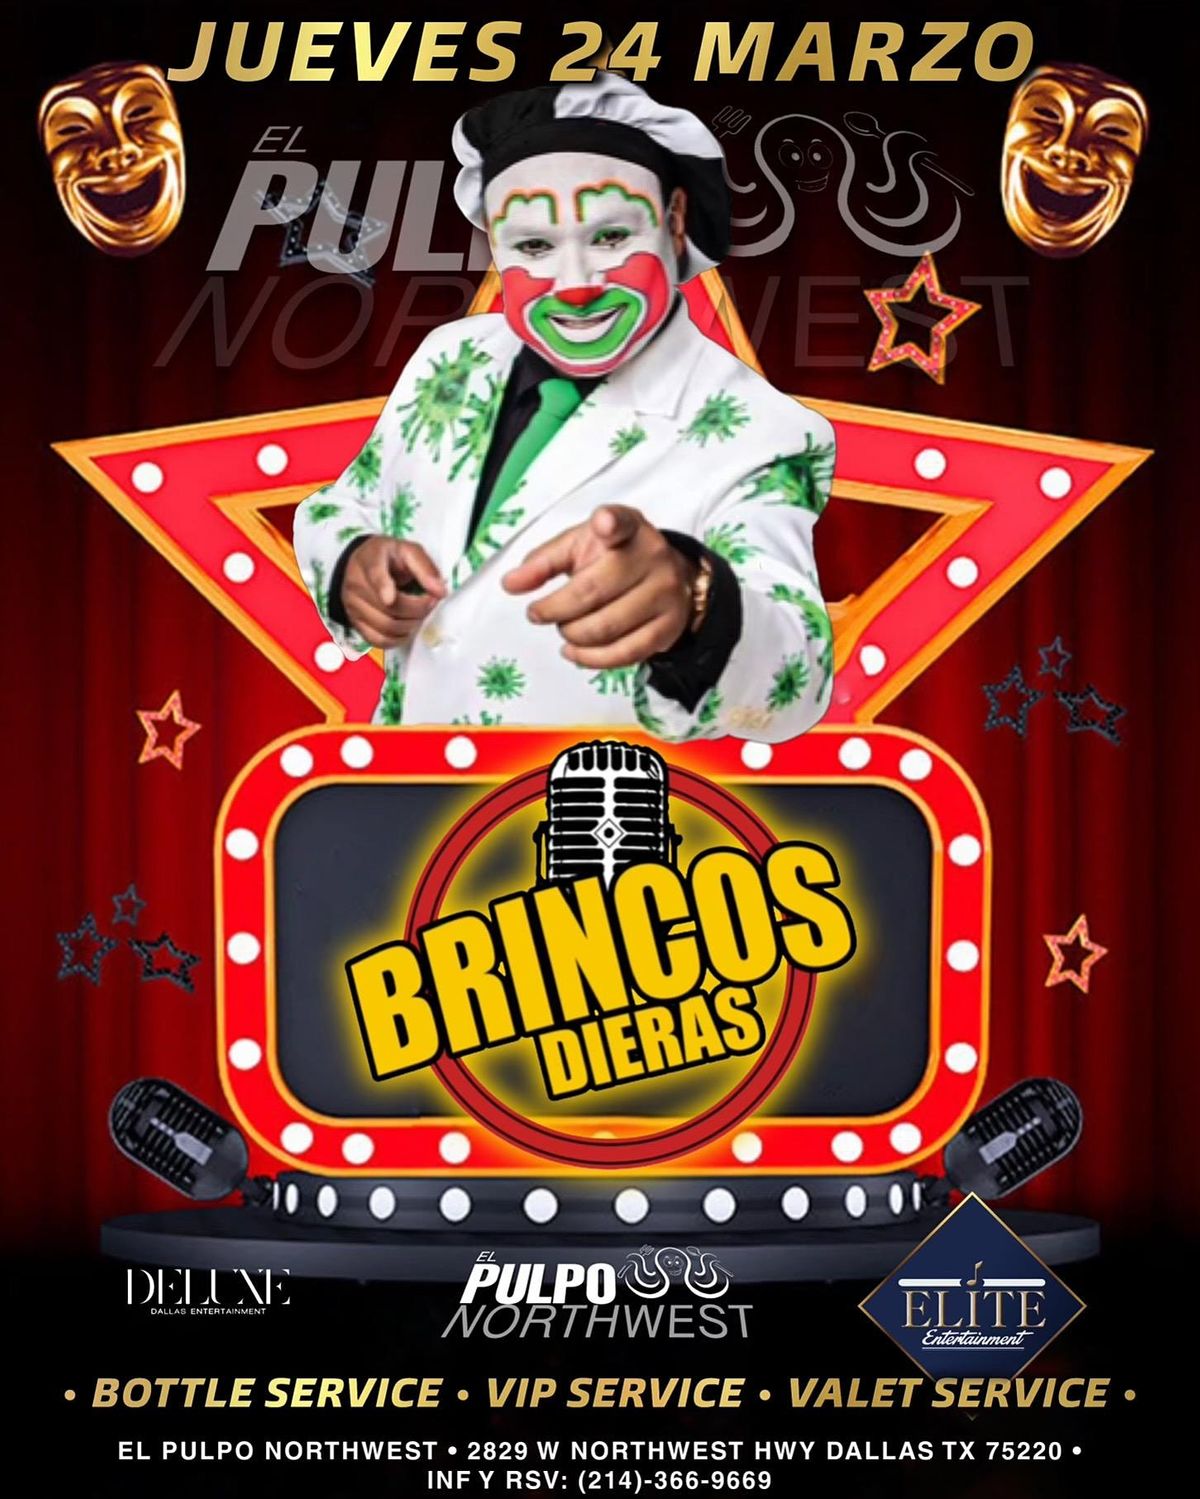 Brincos Dieras, El Pulpo Northwest, Dallas, 24 March to 25 March